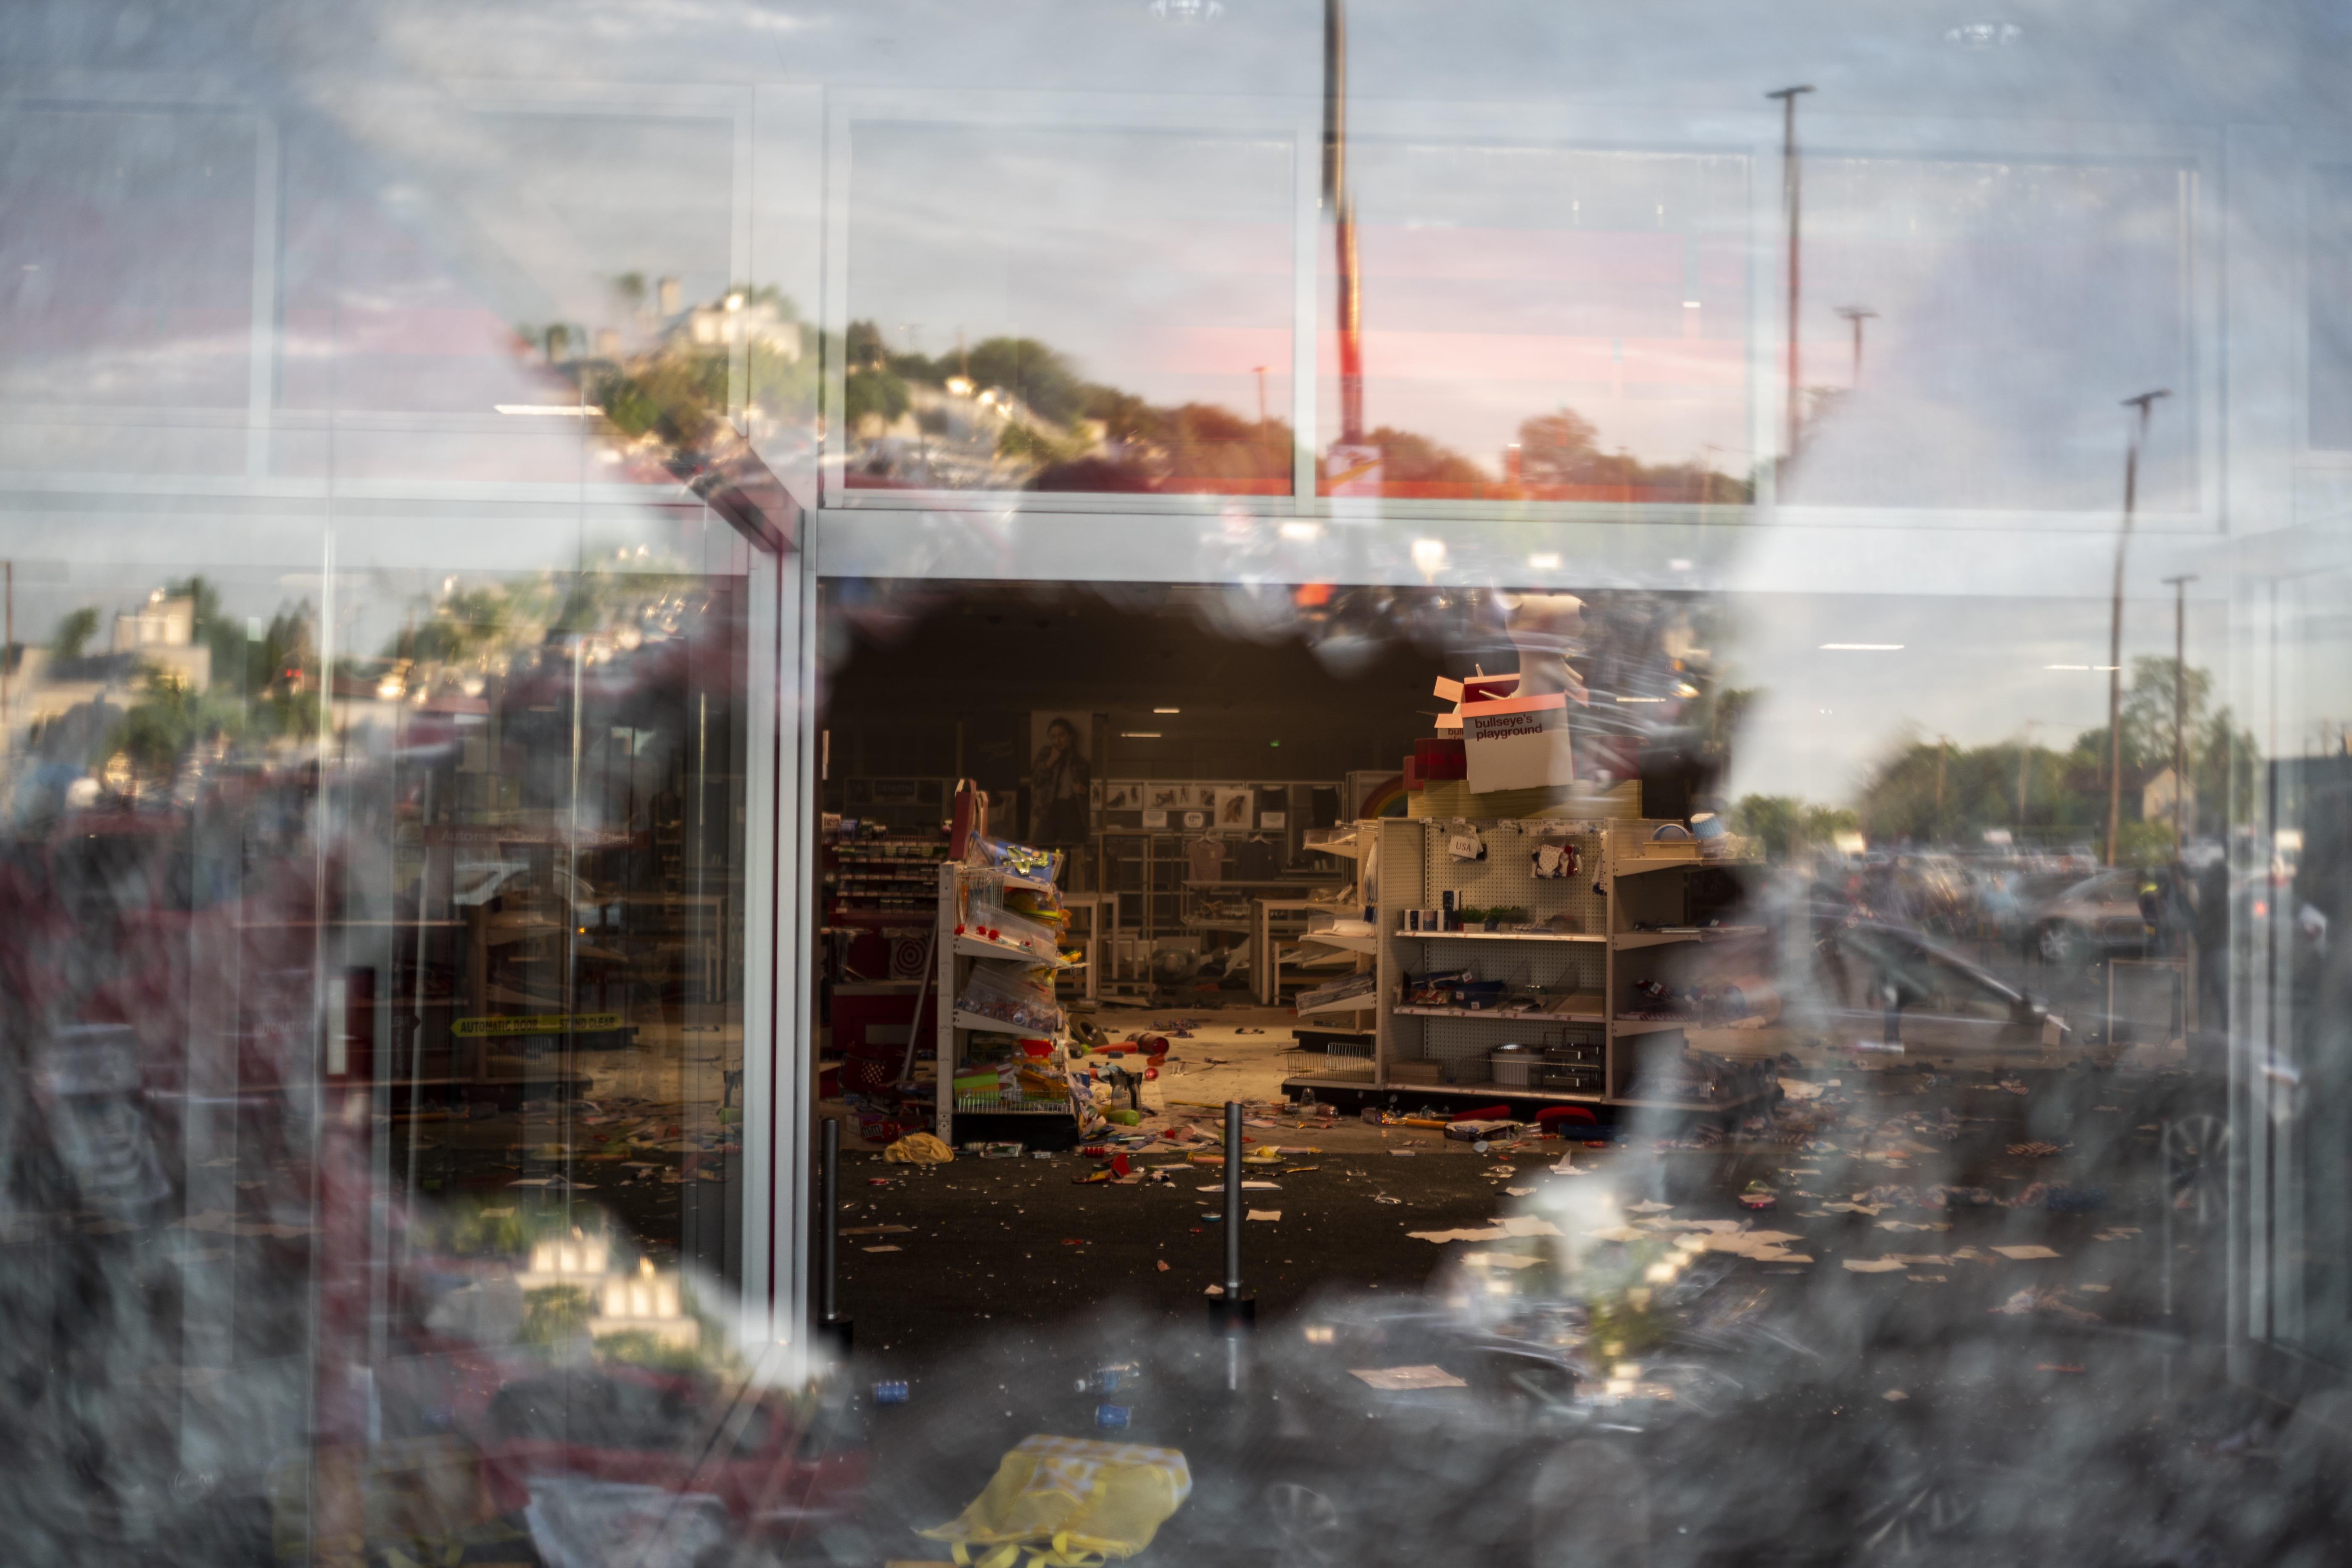  A view inside a Target store through a broken window.